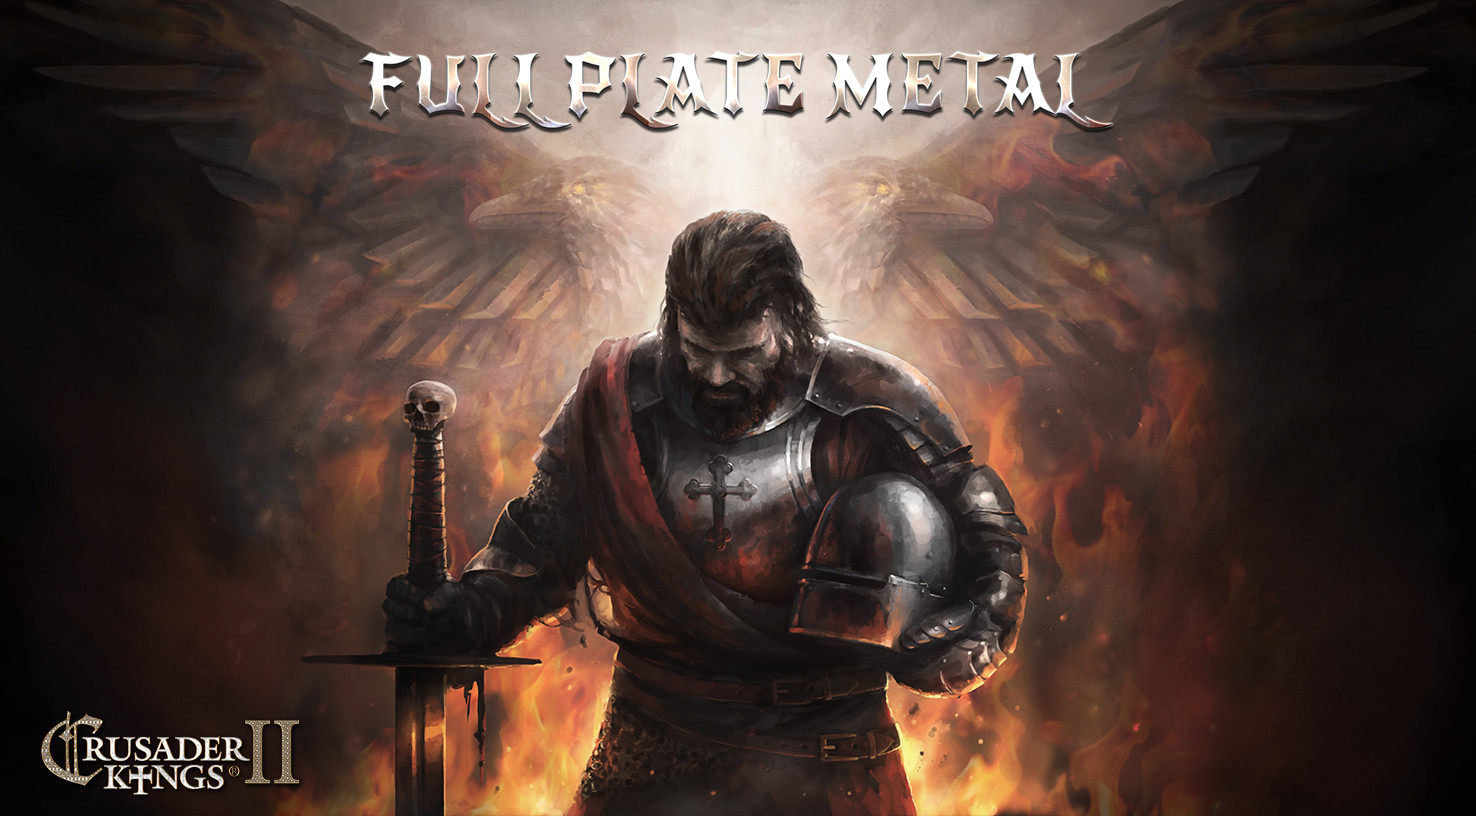 Crusader Kings II - Full Plate Metal DLC Steam CD Key USD 1.84